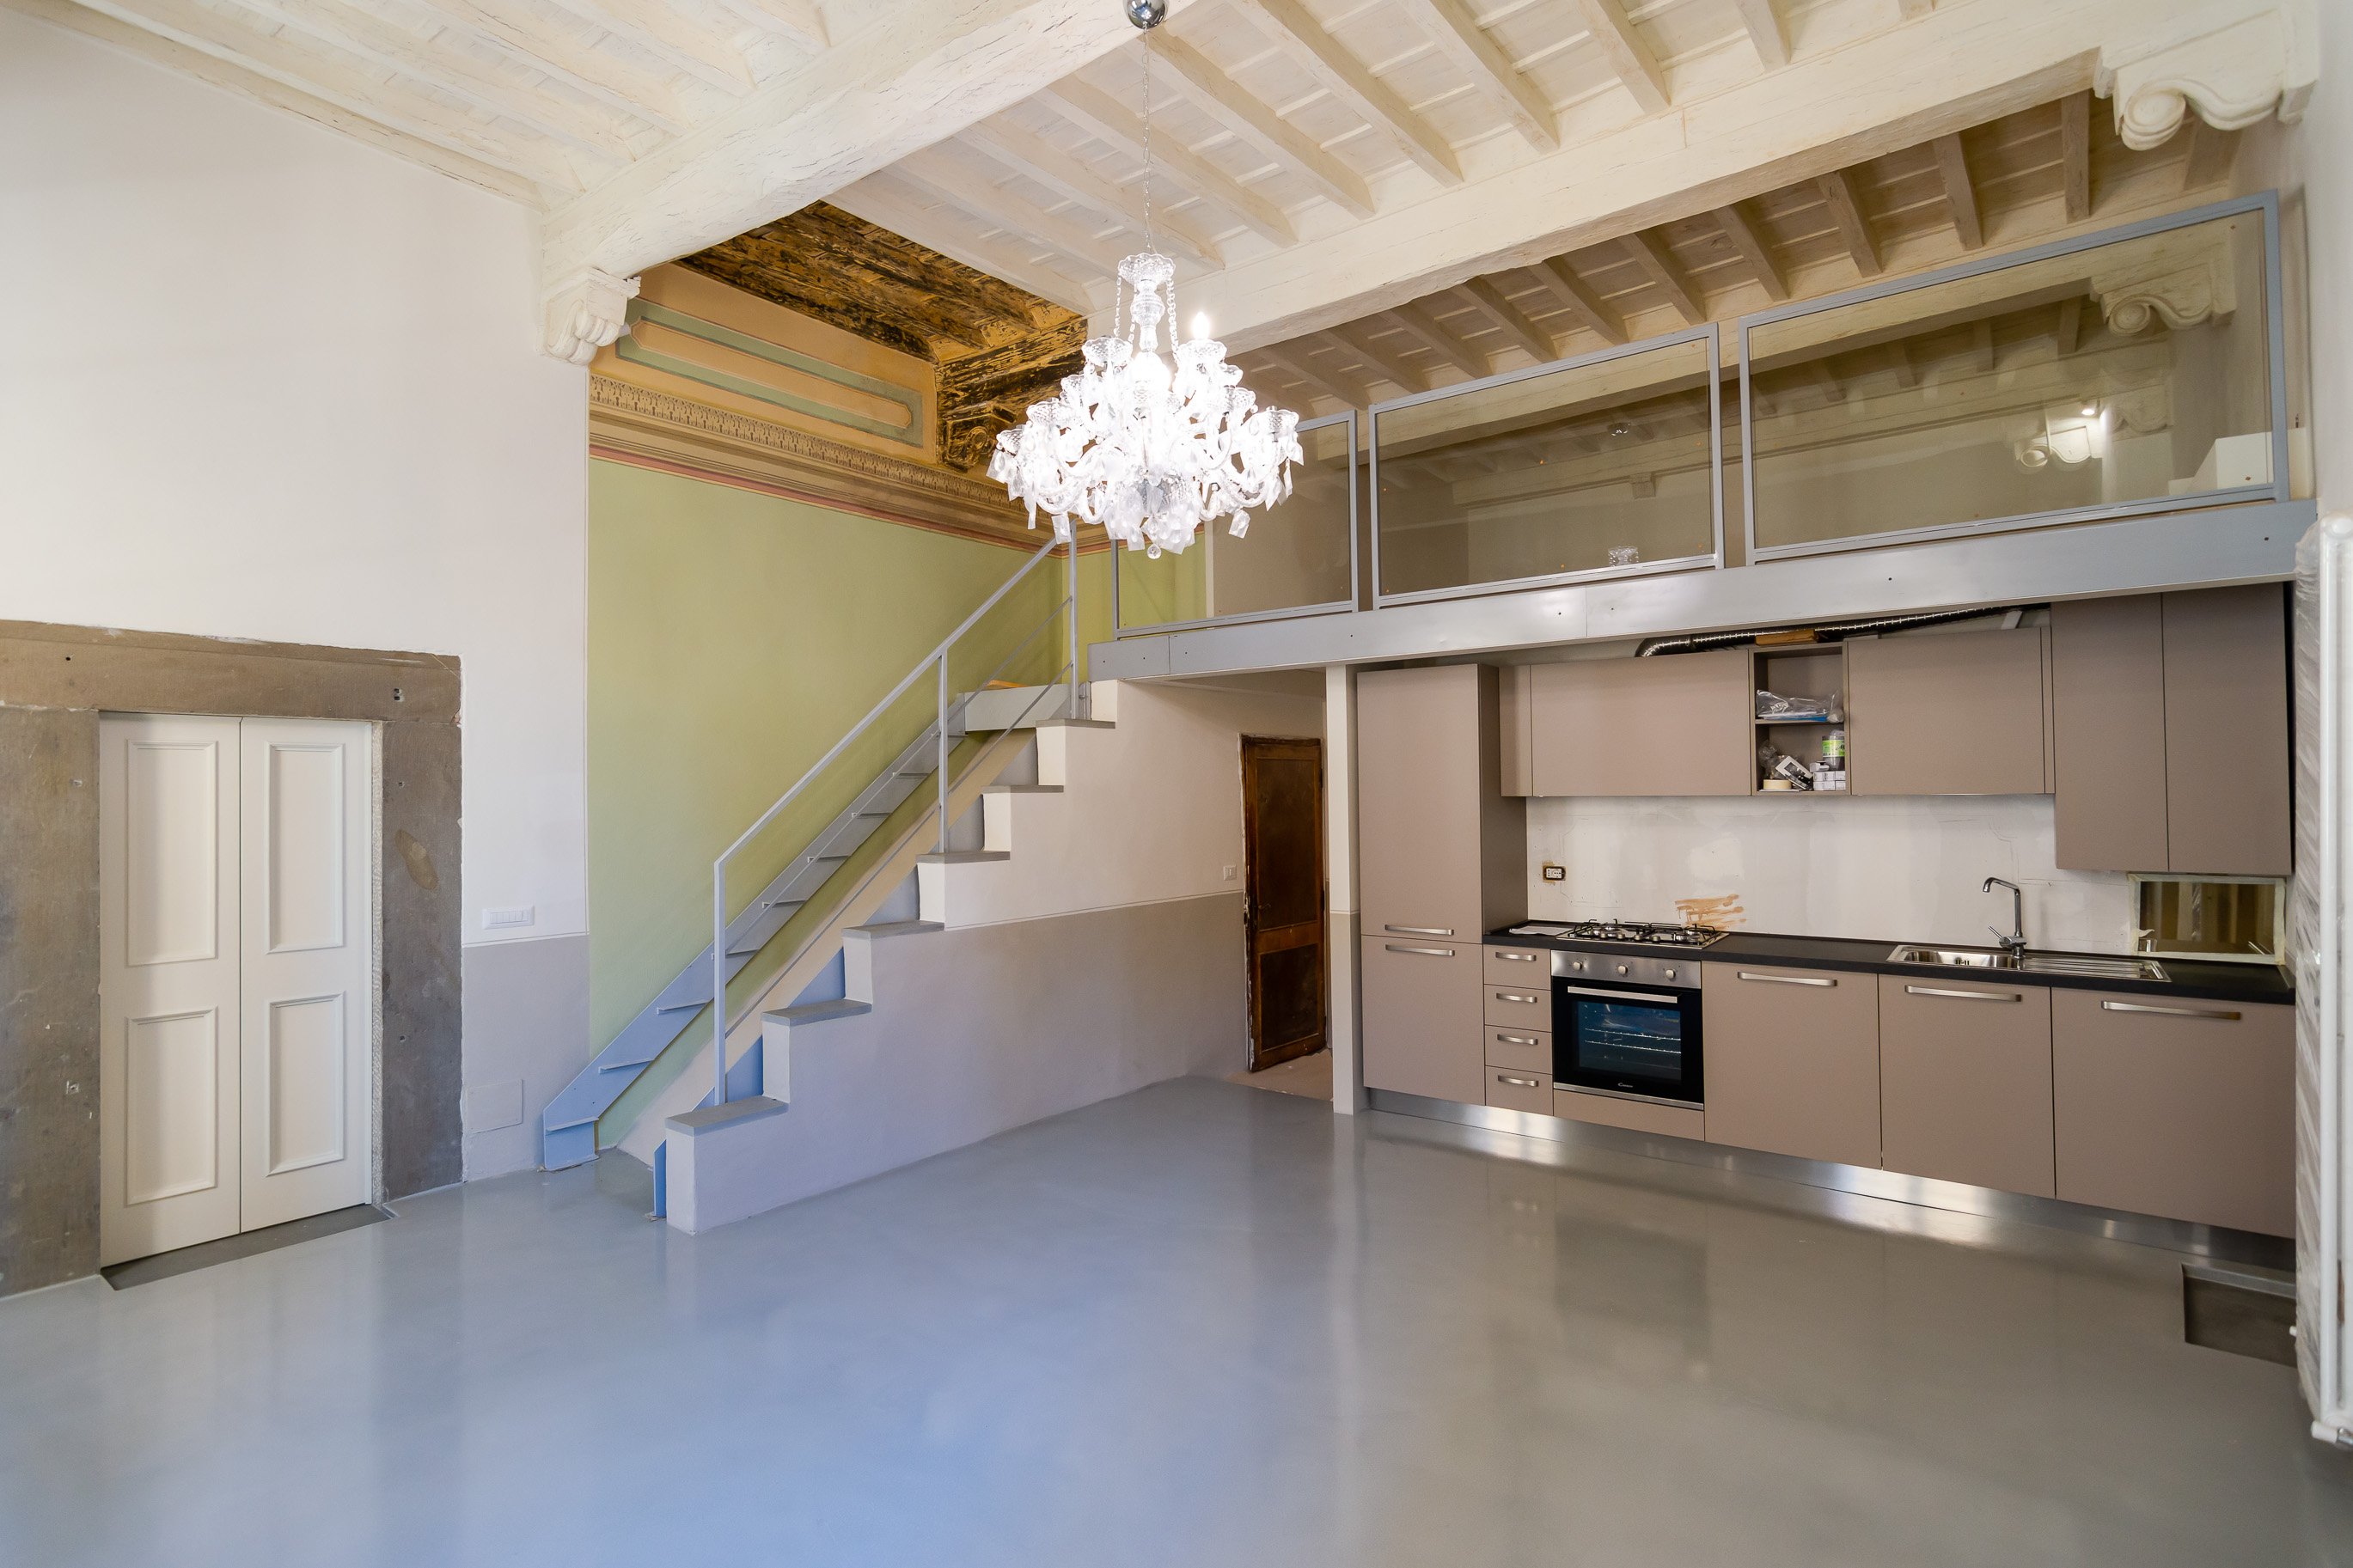 Renovated apartment with mezzanine in Cortona